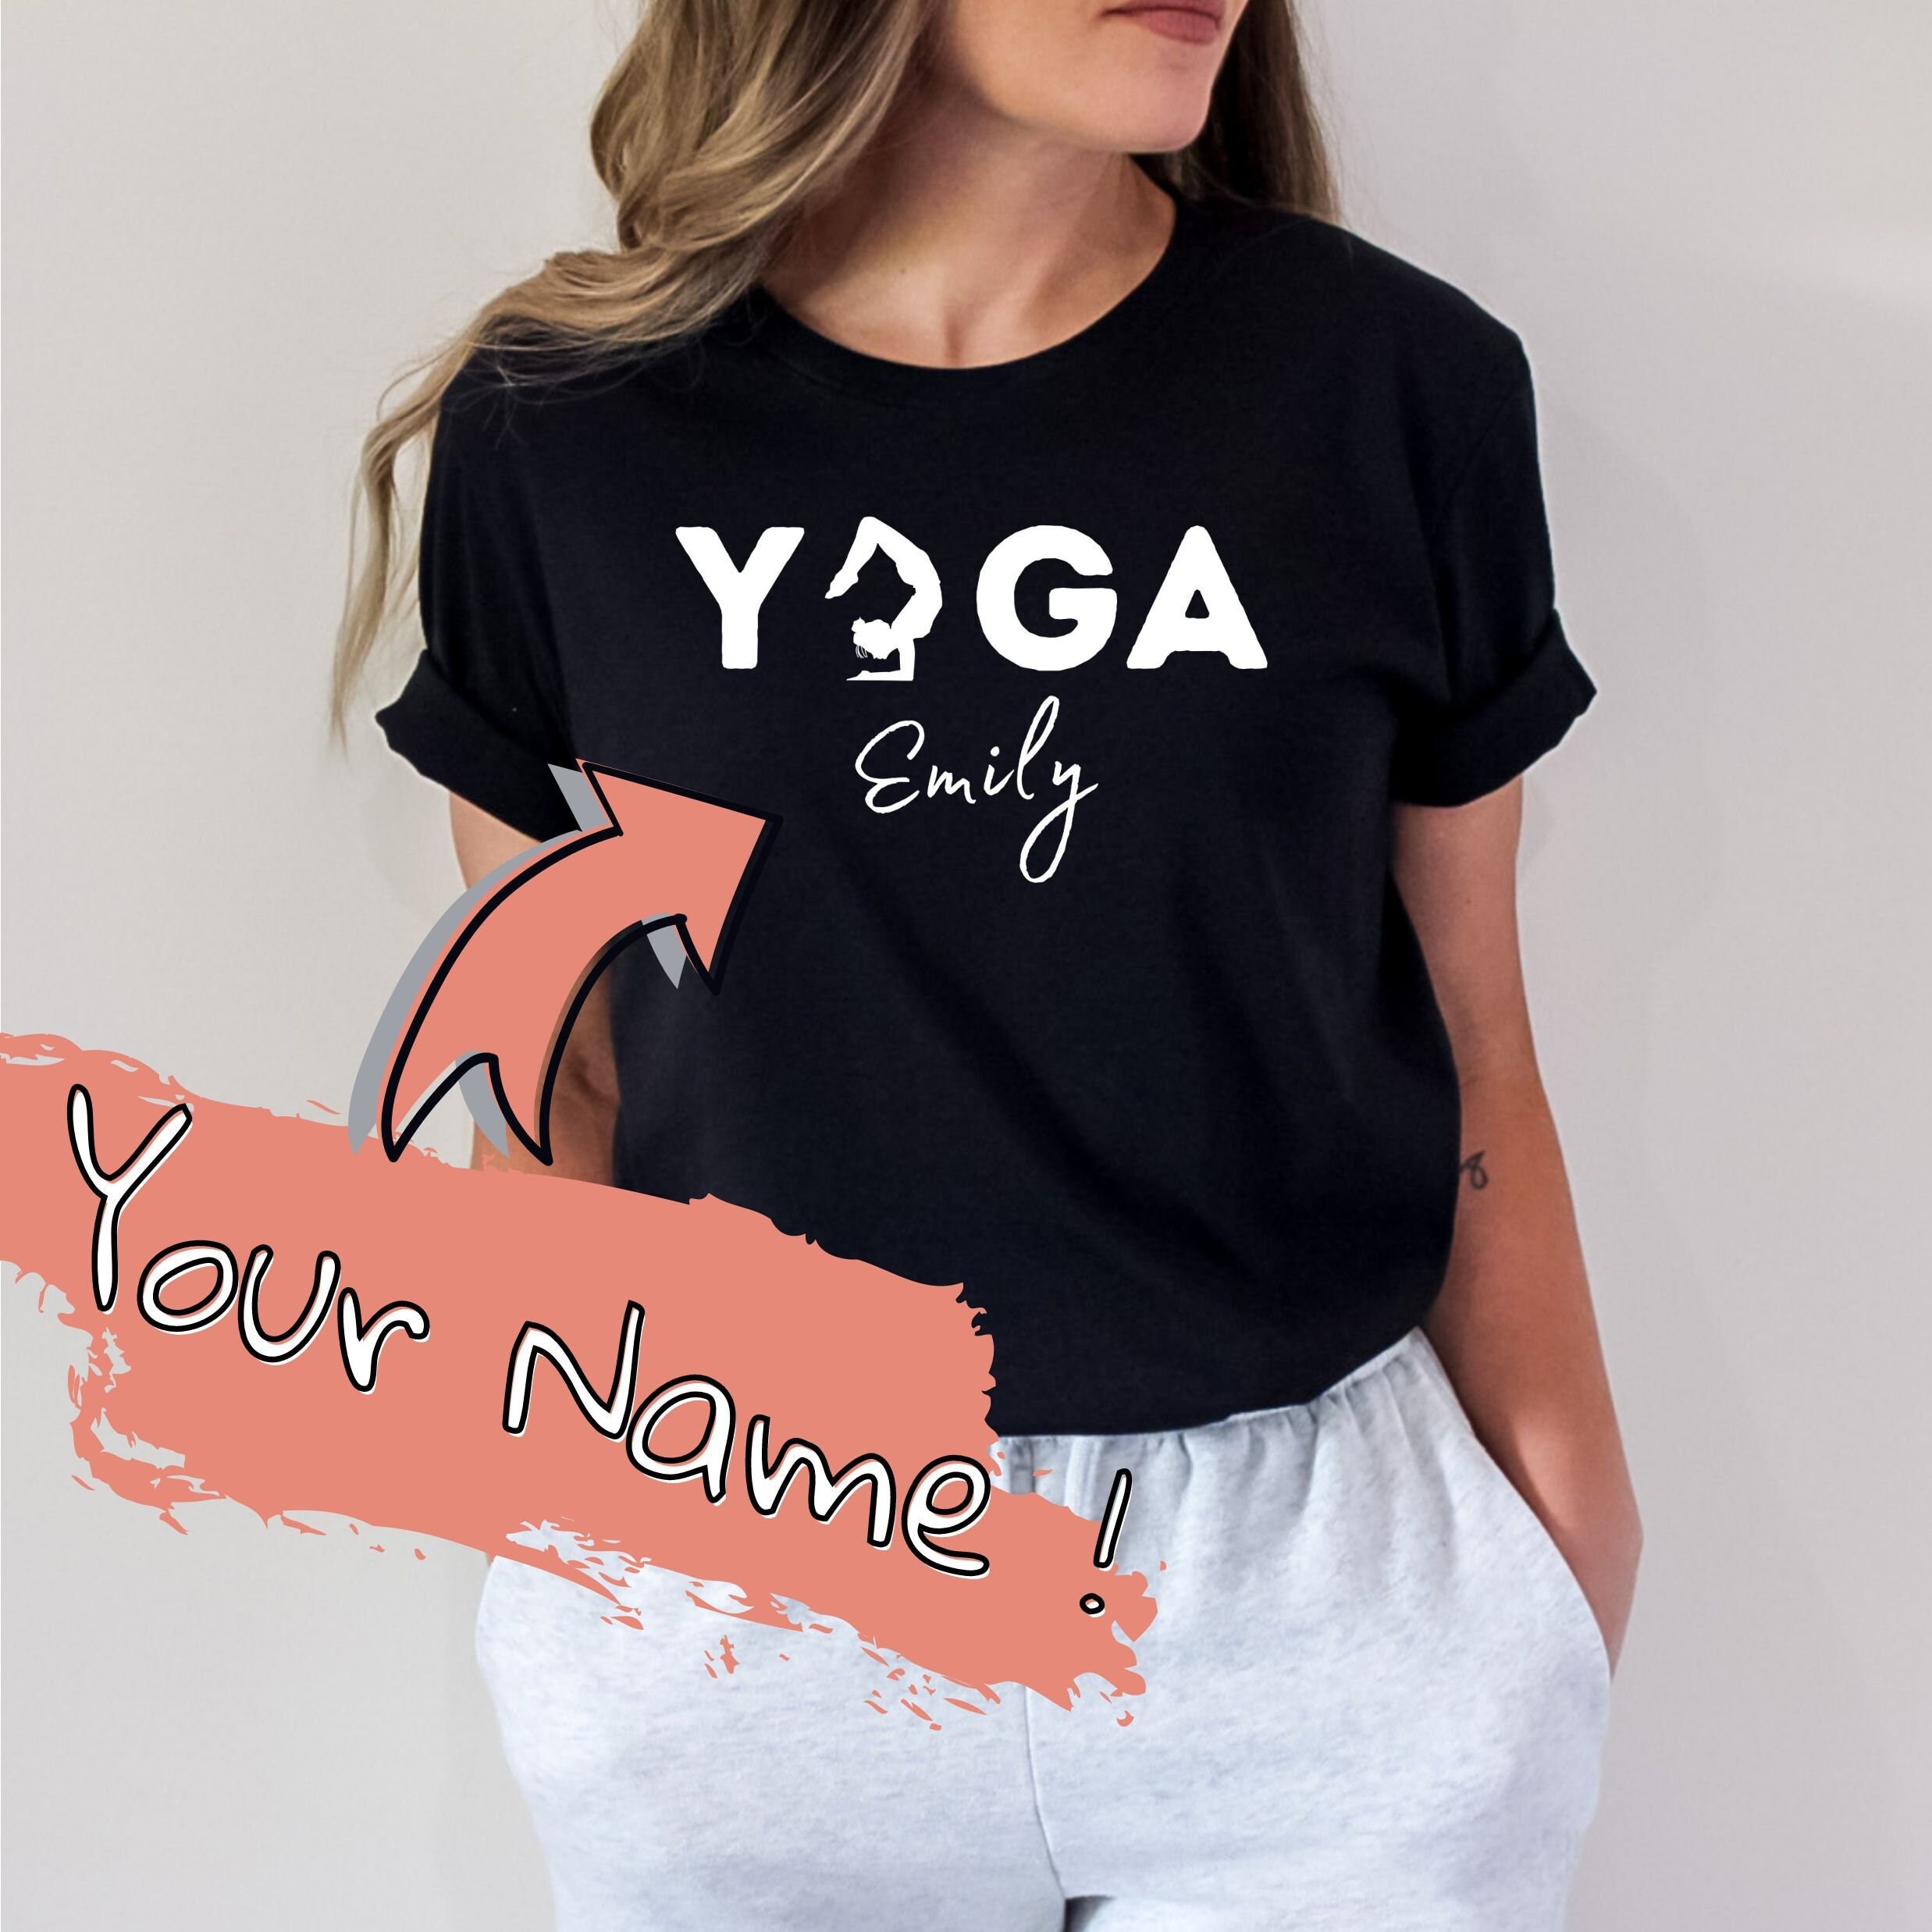 der ovre Forretningsmand cirkulære Yoga Shirt - Etsy